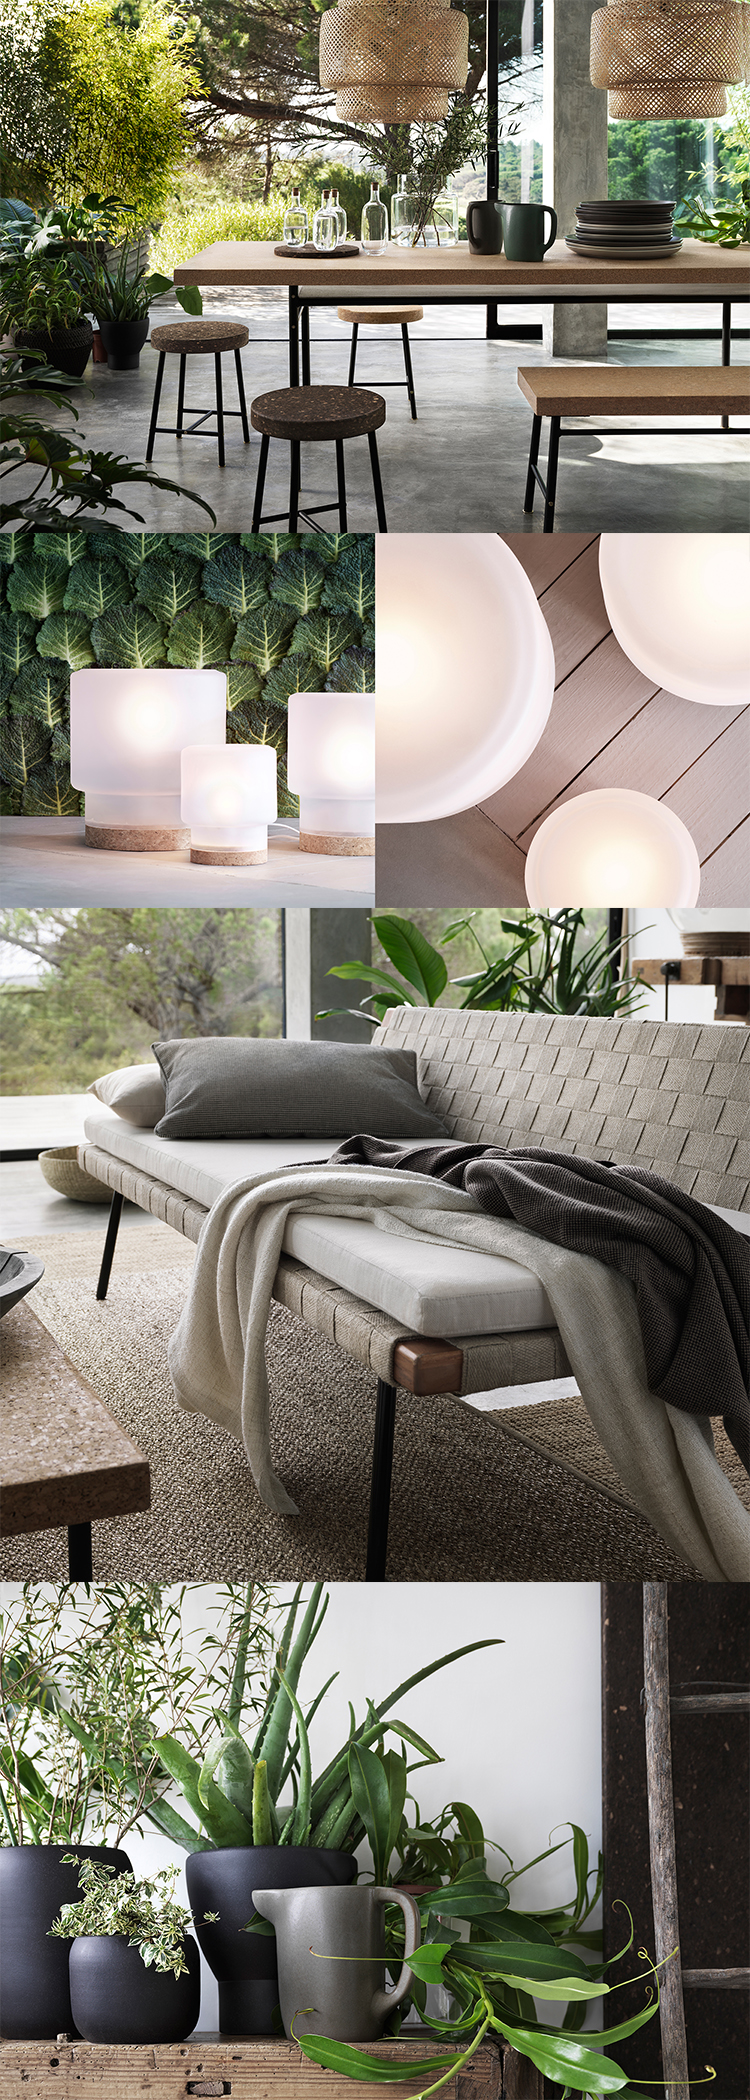 Sinnerlig soffa, bord, lampa, keramik och textil från Ikea.